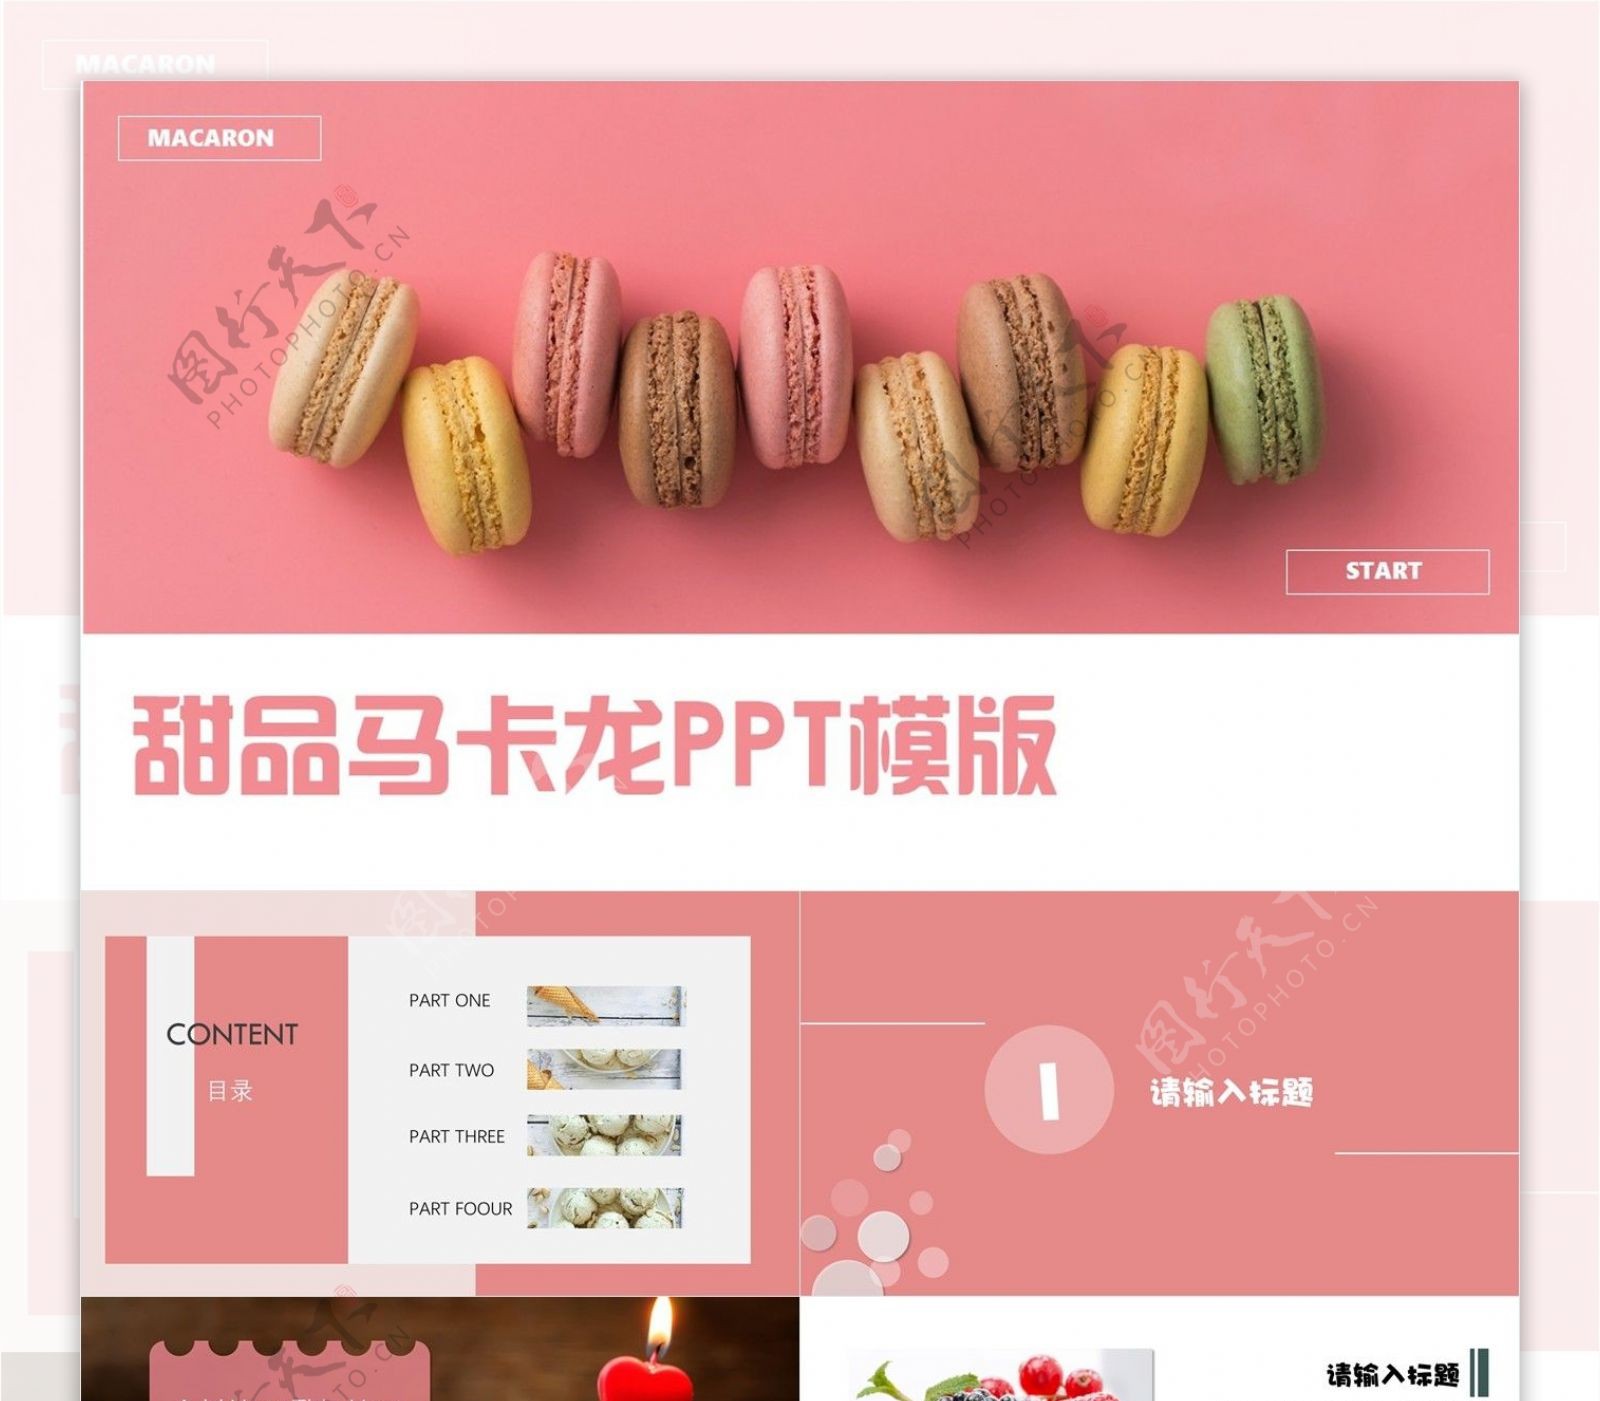 创意甜品马卡龙美食品牌宣传PPT模板